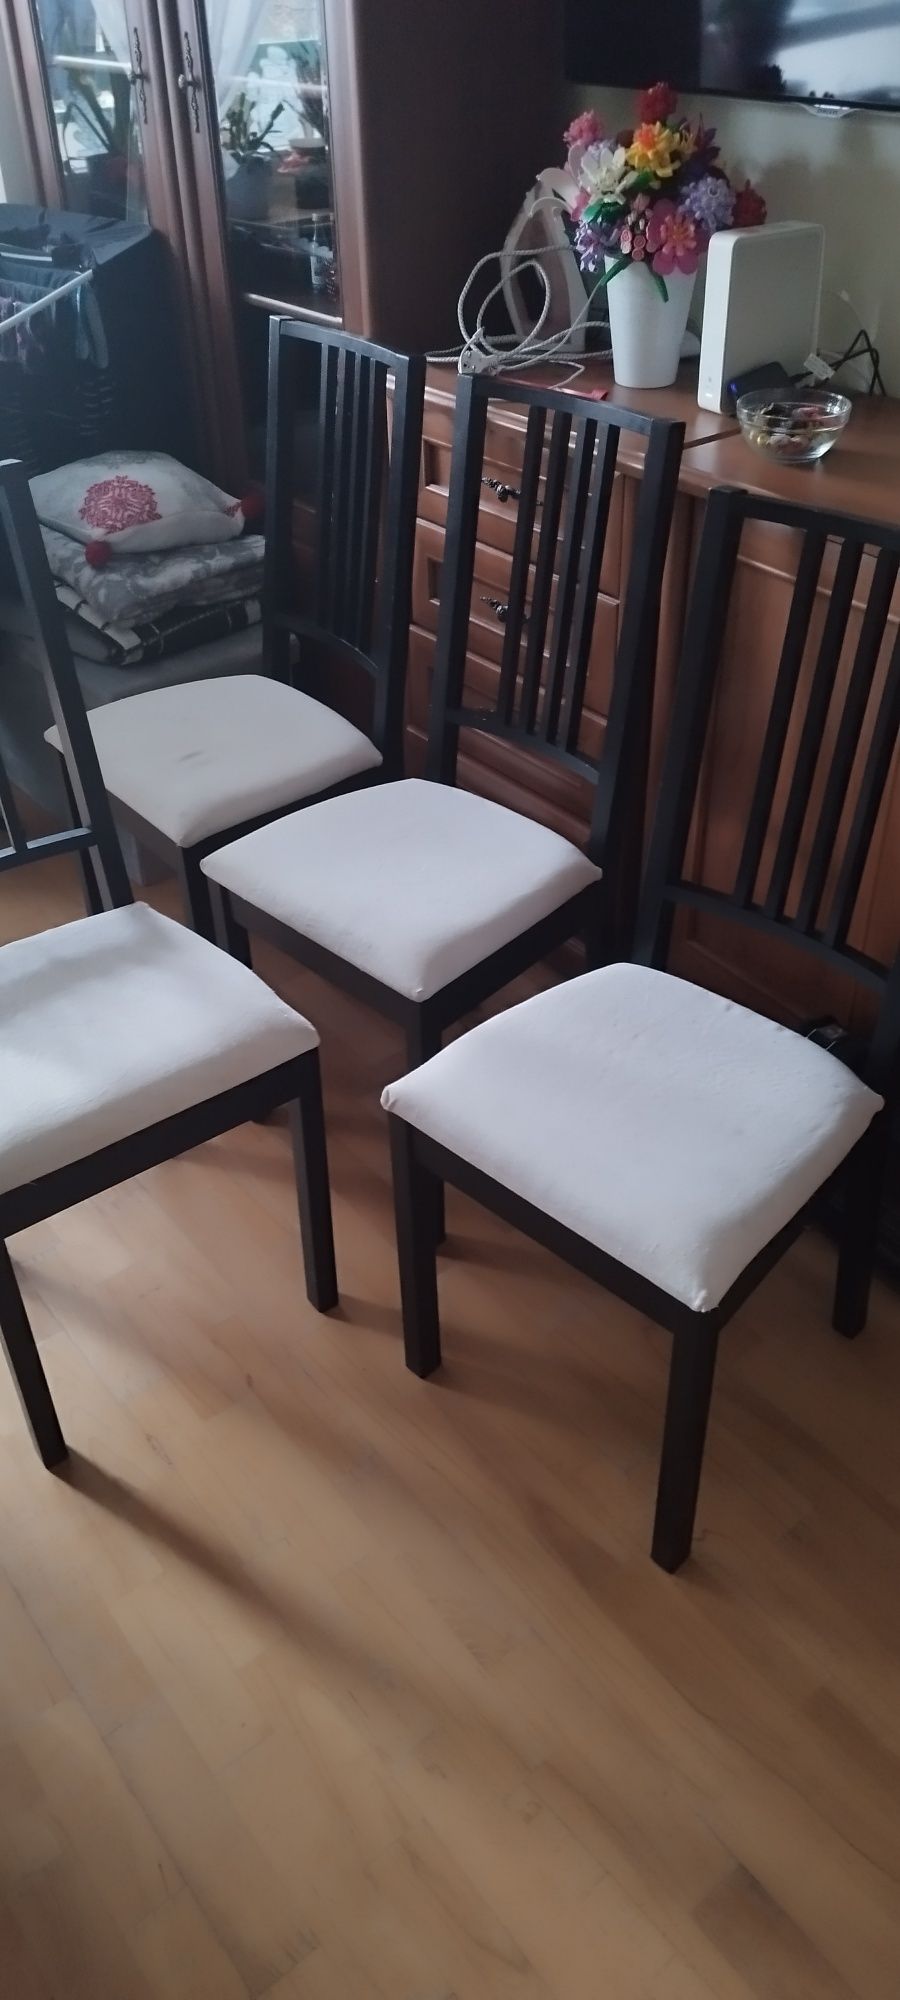 4 krzesła krzesło w dobrym stanie